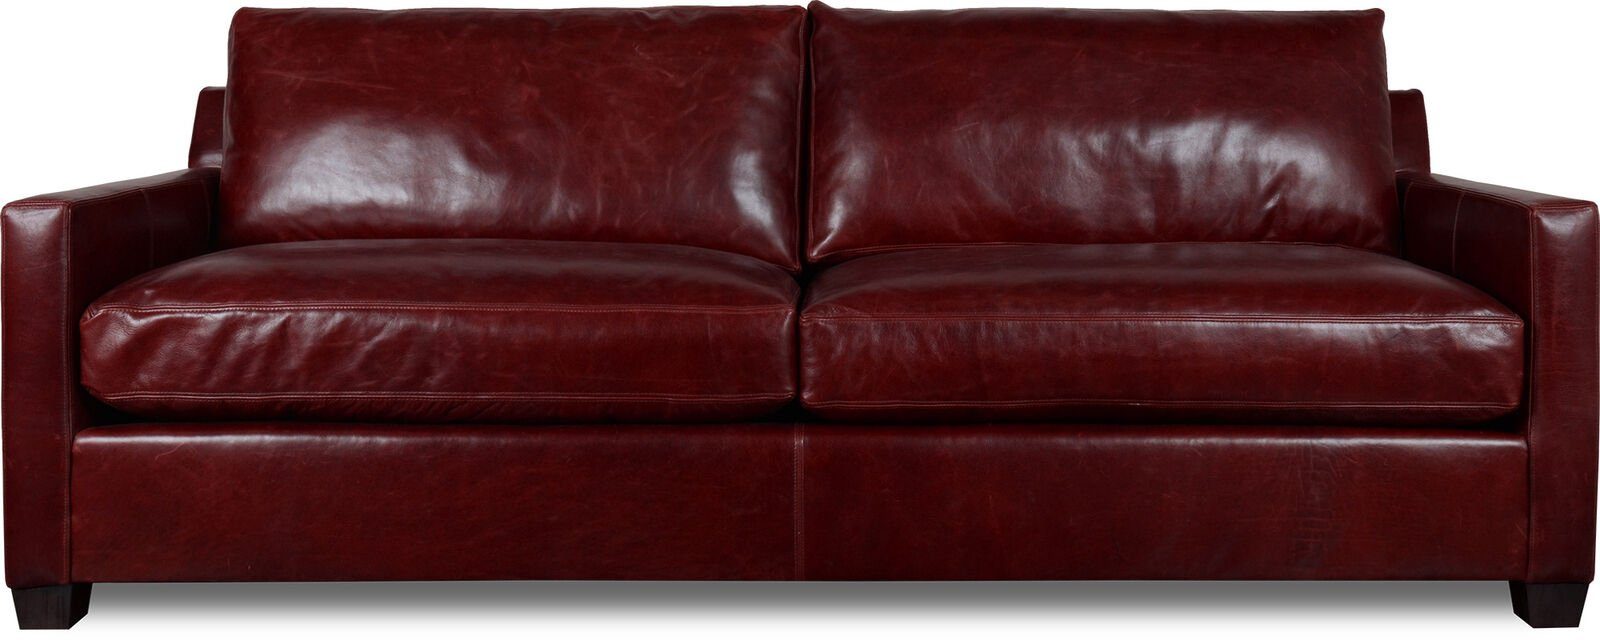 JVmoebel 3-Sitzer XXL Sofa Rot Sitzer Made Polster Neu, Garnitur Couch Sitz in Sofas Europe 3 Leder